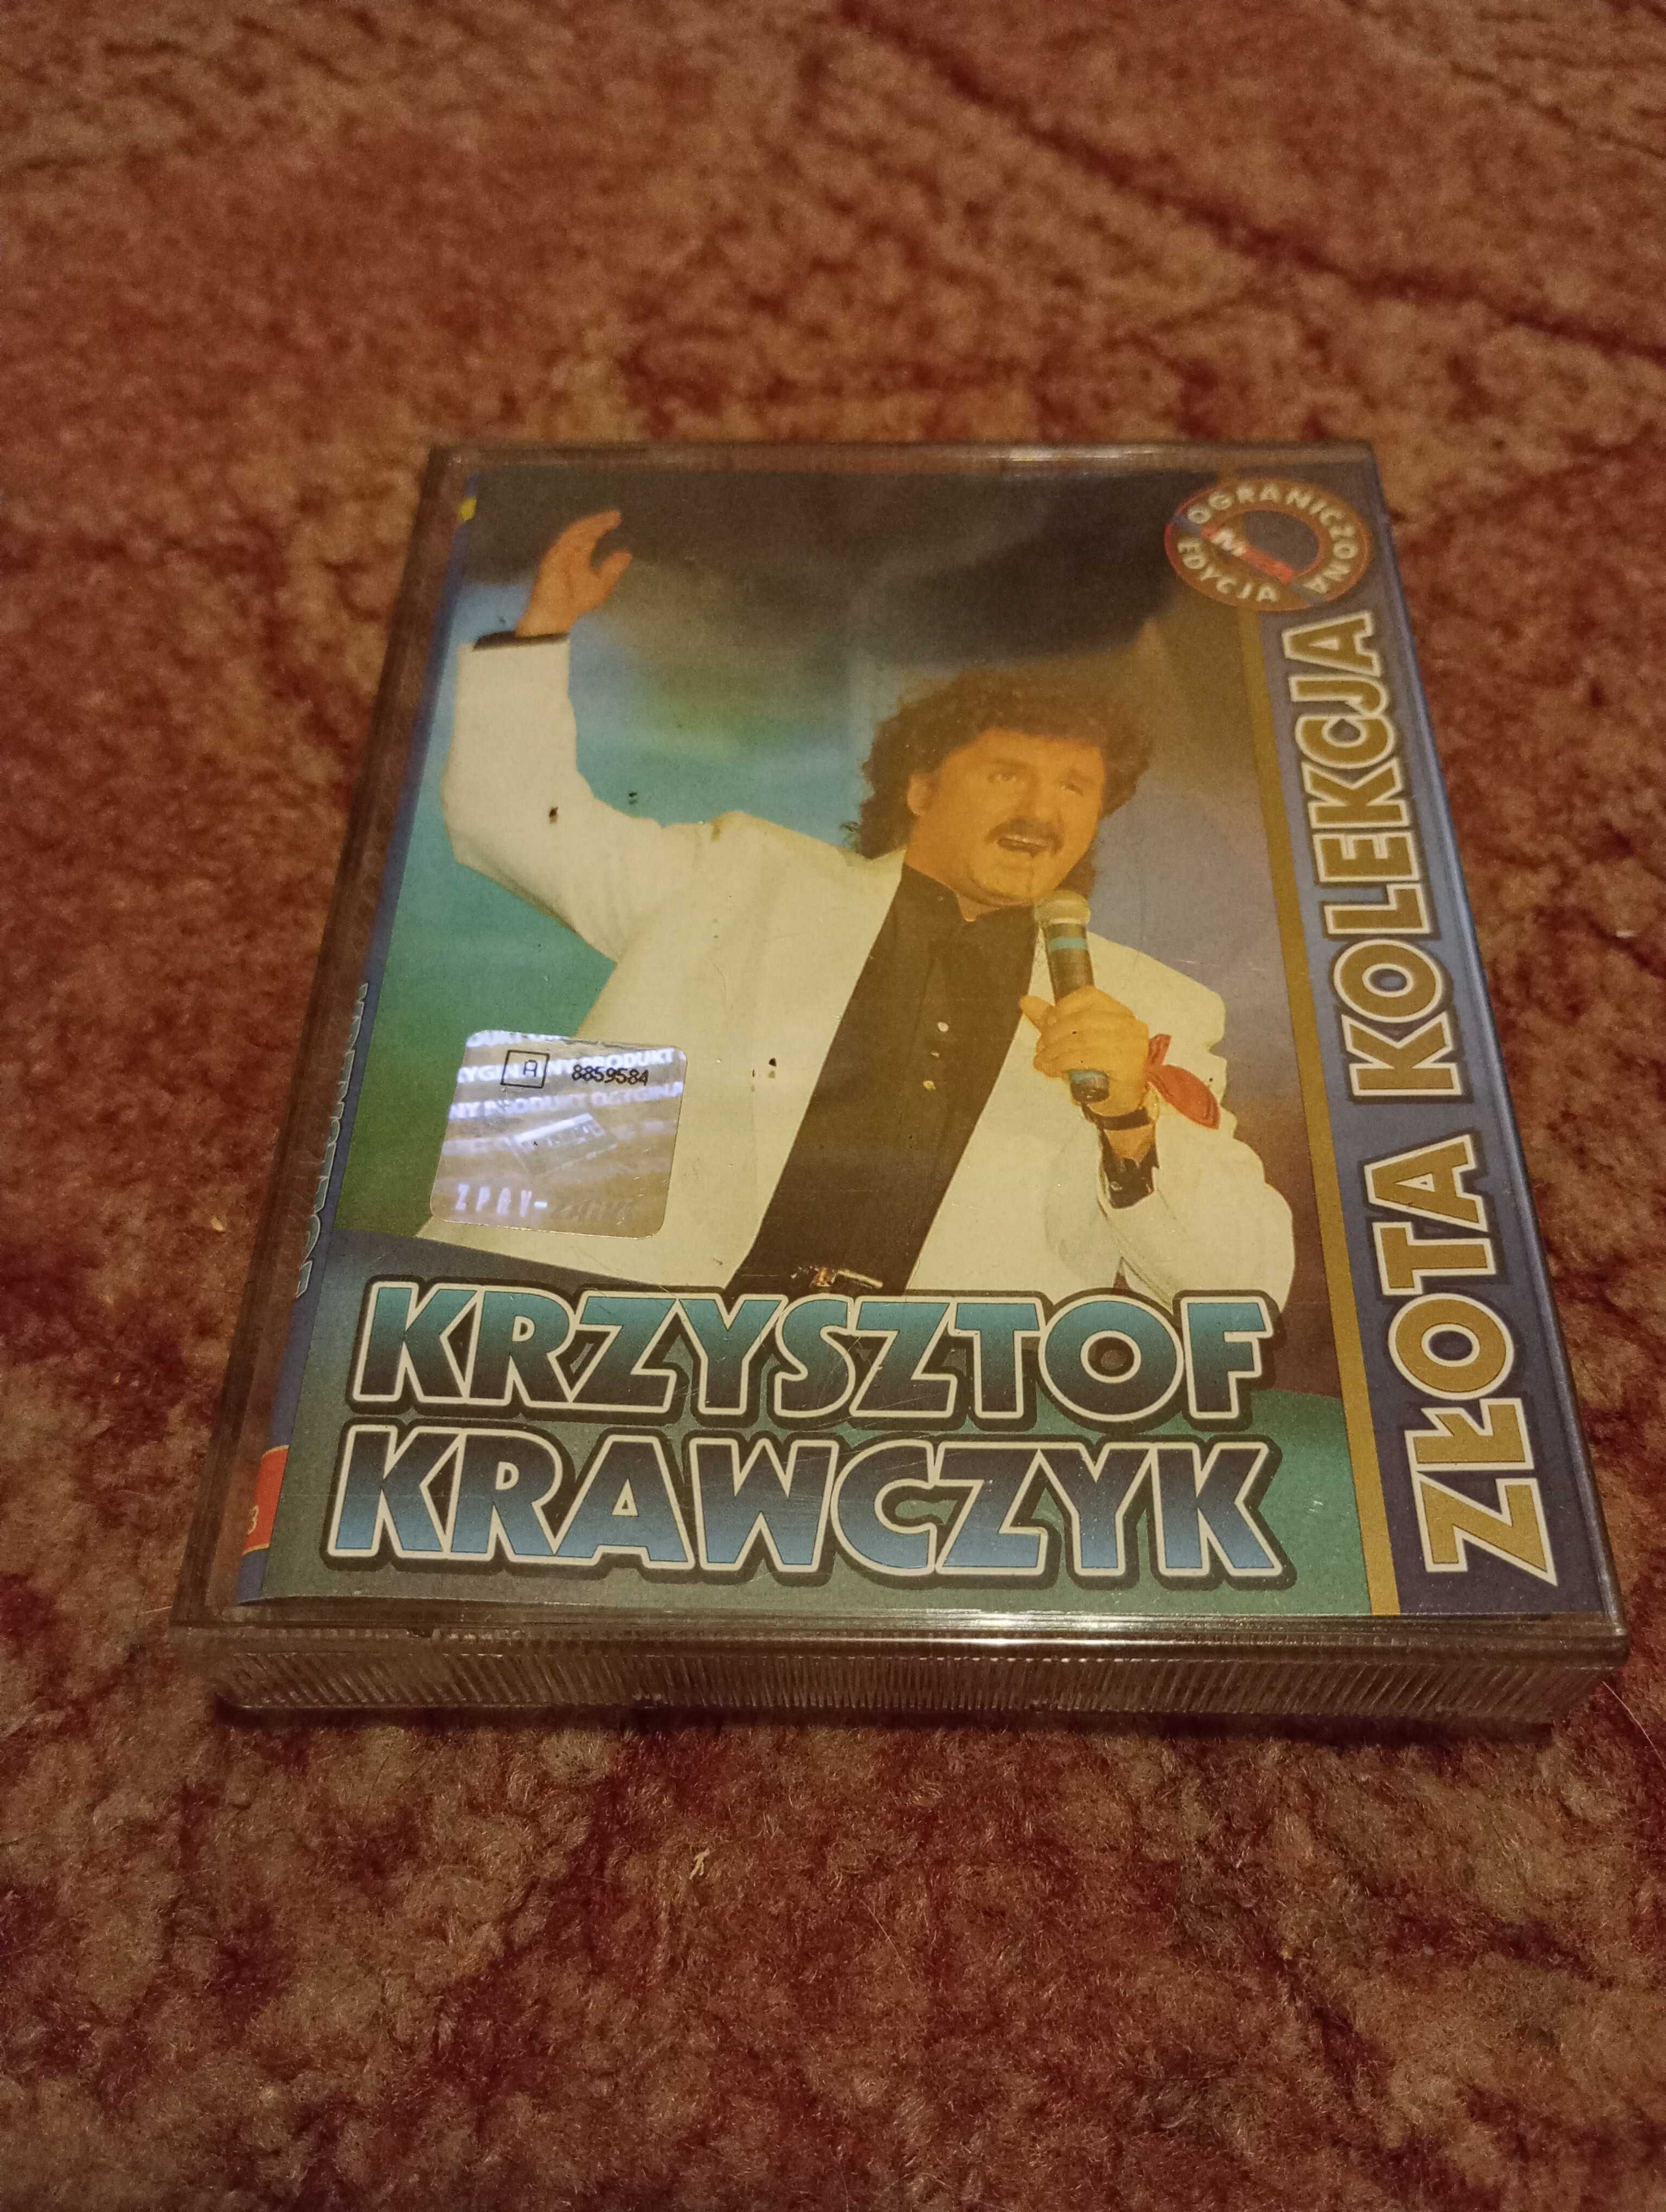 Krzysztof Krawczyk "Złota kolekcja" 2 kasety